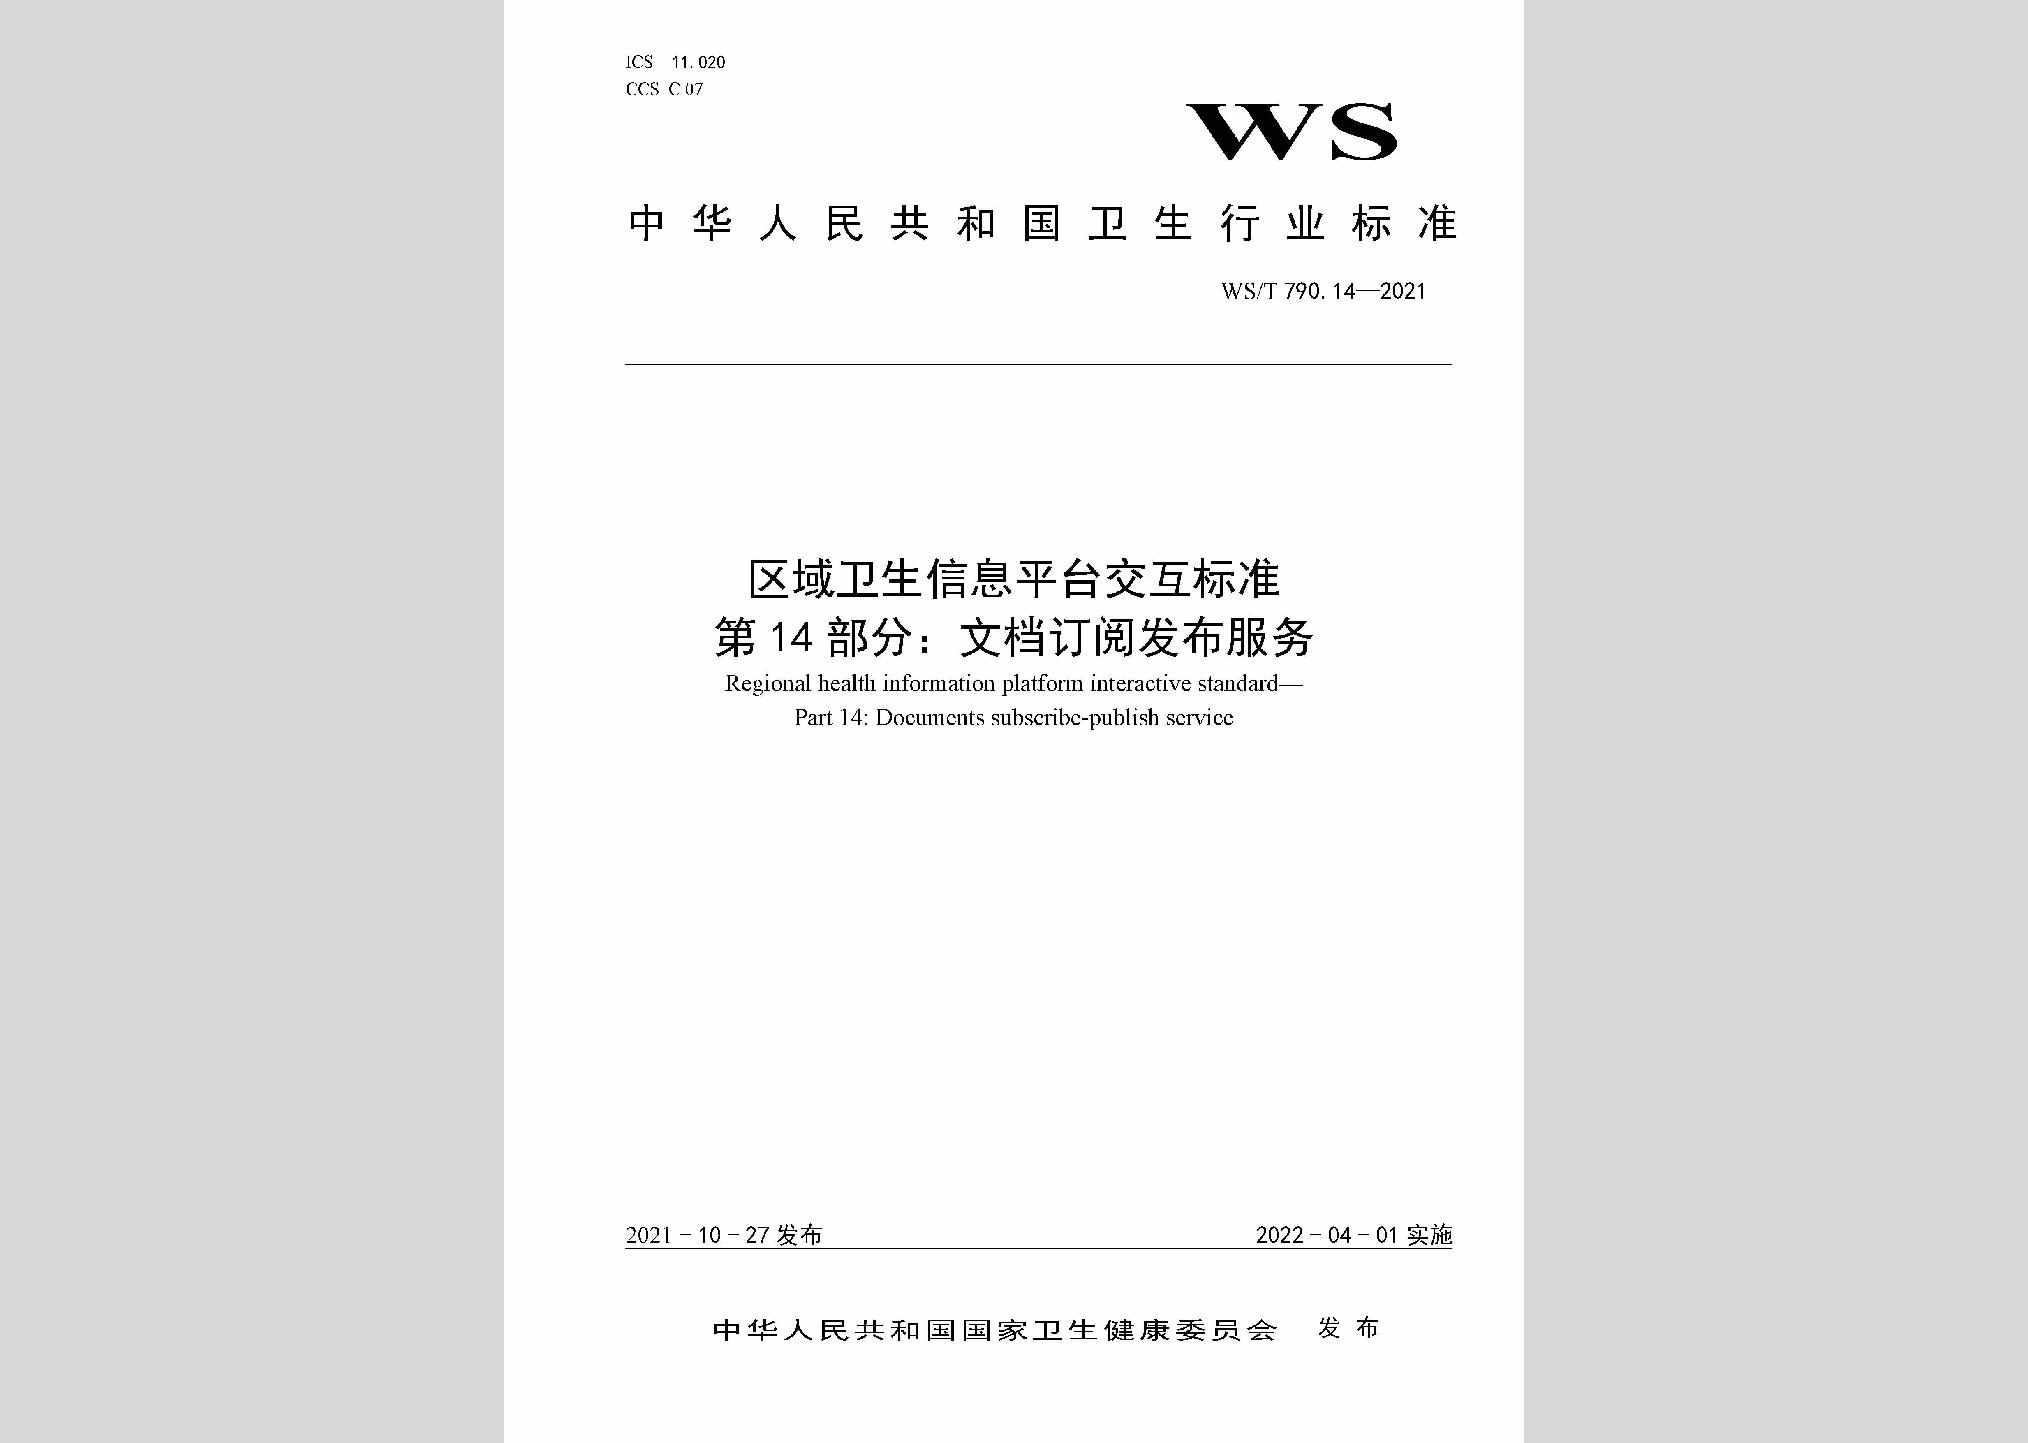 WS/T790.14-2021：区域卫生信息平台交互标准第14部分：文档订阅发布服务